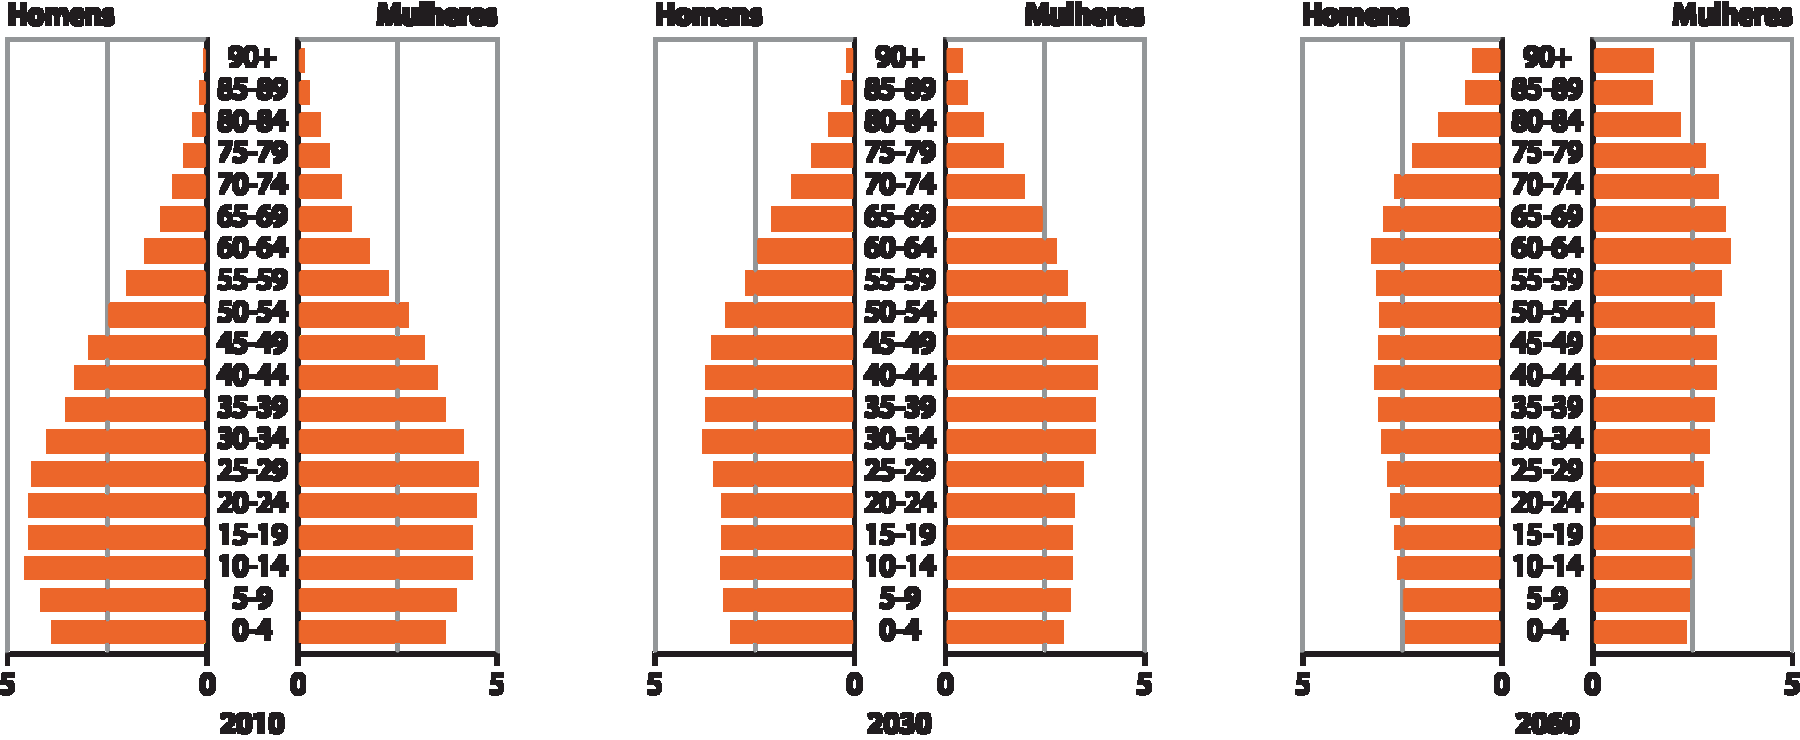 Gráficos de barras. Brasil: projeção da população, de 2010 a 2060. Três gráficos de barras que representam a população em porcentagem de homens e de mulheres por faixas de idade no Brasil para os anos de 2010, 2030 e 2060, respectivamente. No eixo vertical, ao centro, estão as faixas de idade. No eixo horizontal, a população em porcentagem, de 0 a 5 por cento. Do lado esquerdo, porcentagem de homens (barras na cor laranja): Do lado direito, porcentagem de mulheres (barras na cor laranja). Gráfico, 2010. Homens. 0 a 4 anos: 3,9 por cento; 5 a 9 anos: 4,1 por cento; 10 a 14 anos: 4,6 por cento; 15 a 19 anos: 4,5 por cento; 20 a 24 anos: 4,5 por cento; 25 a 29 anos: 4,4 por cento; 30 a 34 anos: 4,0 por cento; 35 a 39 anos: 3,6 por cento; 40 a 44 anos: 3,4 por cento; 45 a 49 anos: 3,0 por cento; 50 a 54 anos: 2,6 por cento; 55 a 59 anos: 2,0 por cento; 60 a 64 anos: 1,5 por cento; 65 a 69 anos: 1,2 por cento; 70 a 74 anos: 0,9 por cento; 75 a 79 anos: 0,6 por cento; 80 a 84 anos: 0,3 por cento; 85 a 89 anos: 0,2 por cento; 90 ou mais: 0,1 por cento. Mulheres 0 a 4 anos: 3,8 por cento; 5 a 9 anos: 4,0 por cento; 10 a 14 anos: 4,2 por cento; 15 a 19 anos: 4,2 por cento; 20 a 24 anos: 4,3 por cento; 25 a 29 anos: 4, 3 por cento; 30 a 34 anos: 4,1 por cento; 35 a 39 anos: 3,8 por cento; 40 a 44 anos: 3,6 por cento; 45 a 49 anos: 3,1 por cento; 50 a 54 anos: 2,6 por cento; 55 a 59 anos: 2,2 por cento; 60 a 64 anos: 1,8 por cento; 65 a 69 anos: 1,3 por cento; 70 a 74 anos: 1,1 por cento; 75 a 79 anos: 0,8 por cento; 80 a 84 anos: 0,6 por cento; 85 a 89 anos: 0,3 por cento; 90 ou mais: 0,2 por cento. Gráfico, 2030. Homens. 0 a 4 anos: 3,1 por cento; 5 a 9 anos: 3,2 por cento; 10 a 14 anos: 3,3 por cento; 15 a 19 anos: 3,2 por cento; 20 a 24 anos: 3,2 por cento; 25 a 29 anos: 3,6 por cento; 30 a 34 anos: 3,9 por cento; 35 a 39 anos: 3,8 por cento; 40 a 44 anos: 3,8 por cento; 45 a 49 anos: 3,6 por cento; 50 a 54 anos: 3,3 por cento; 55 a 59 anos: 2,8 por cento; 60 a 64 anos: 2,4 por cento; 65 a 69 anos: 2,1 por cento; 70 a 74 anos: 1,6 por cento; 75 a 79 anos: 1,2 por cento; 80 a 84 anos: 0,6 por cento; 85 a 89 anos: 0,3 por cento; 90 ou mais: 0,2 por cento. Mulheres 0 a 4 anos: 3,0 por cento; 5 a 9 anos: 3,1 por cento; 10 a 14 anos: 3,2 por cento; 15 a 19 anos: 3,2 por cento; 20 a 24 anos: 3,3 por cento; 25 a 29 anos: 3,6 por cento; 30 a 34 anos: 3,8 por cento; 35 a 39 anos: 3,8 por cento; 40 a 44 anos: 3,8 por cento; 45 a 49 anos: 3,8 por cento; 50 a 54 anos: 3,6 por cento; 55 a 59 anos: 3,0 por cento; 60 a 64 anos: 2,7 por cento; 65 a 69 anos: 2,4 por cento; 70 a 74 anos: 1,9 por cento; 75 a 79 anos: 1,6 por cento; 80 a 84 anos: 0,9 por cento; 85 a 89 anos: 0,4 por cento; 90 ou mais: 0,3 por cento. Gráfico, 2060. Homens. 0 a 4 anos: 2,4 por cento; 5 a 9 anos: 2,5 por cento; 10 a 14 anos: 2,6 por cento; 15 a 19 anos: 2,7 por cento; 20 a 24 anos: 2,8 por cento; 25 a 29 anos: 2,9 por cento; 30 a 34 anos: 3,0 por cento; 35 a 39 anos: 3,1 por cento; 40 a 44 anos: 3,2 por cento; 45 a 49 anos: 3,1 por cento; 50 a 54 anos: 3,1 por cento; 55 a 59 anos: 3,2 por cento; 60 a 64 anos: 3,3 por cento; 65 a 69 anos: 3,0 por cento; 70 a 74 anos: 2,7 por cento; 75 a 79 anos: 2,2 por cento; 80 a 84 anos: 1,5 por cento; 85 a 89 anos: 0,9 por cento; 90 ou mais: 0,8 por cento. Mulheres 0 a 4 anos: 2,3 por cento; 5 a 9 anos: 2,4 por cento; 10 a 14 anos: 2,5 por cento; 15 a 19 anos: 2,6 por cento; 20 a 24 anos: 2,7 por cento; 25 a 29 anos: 2,8 por cento; 30 a 34 anos: 2,9 por cento; 35 a 39 anos: 3,0 por cento; 40 a 44 anos: 3,0 por cento; 45 a 49 anos: 3,0 por cento; 50 a 54 anos: 3,0 por cento; 55 a 59 anos: 3,1 por cento; 60 a 64 anos: 3,3 por cento; 65 a 69 anos: 3,2 por cento; 70 a 74 anos: 3,0 por cento; 75 a 79 anos: 2,8 por cento; 80 a 84 anos: 2,0 por cento; 85 a 89 anos: 1,3 por cento; 90 ou mais: 1,4 por cento.